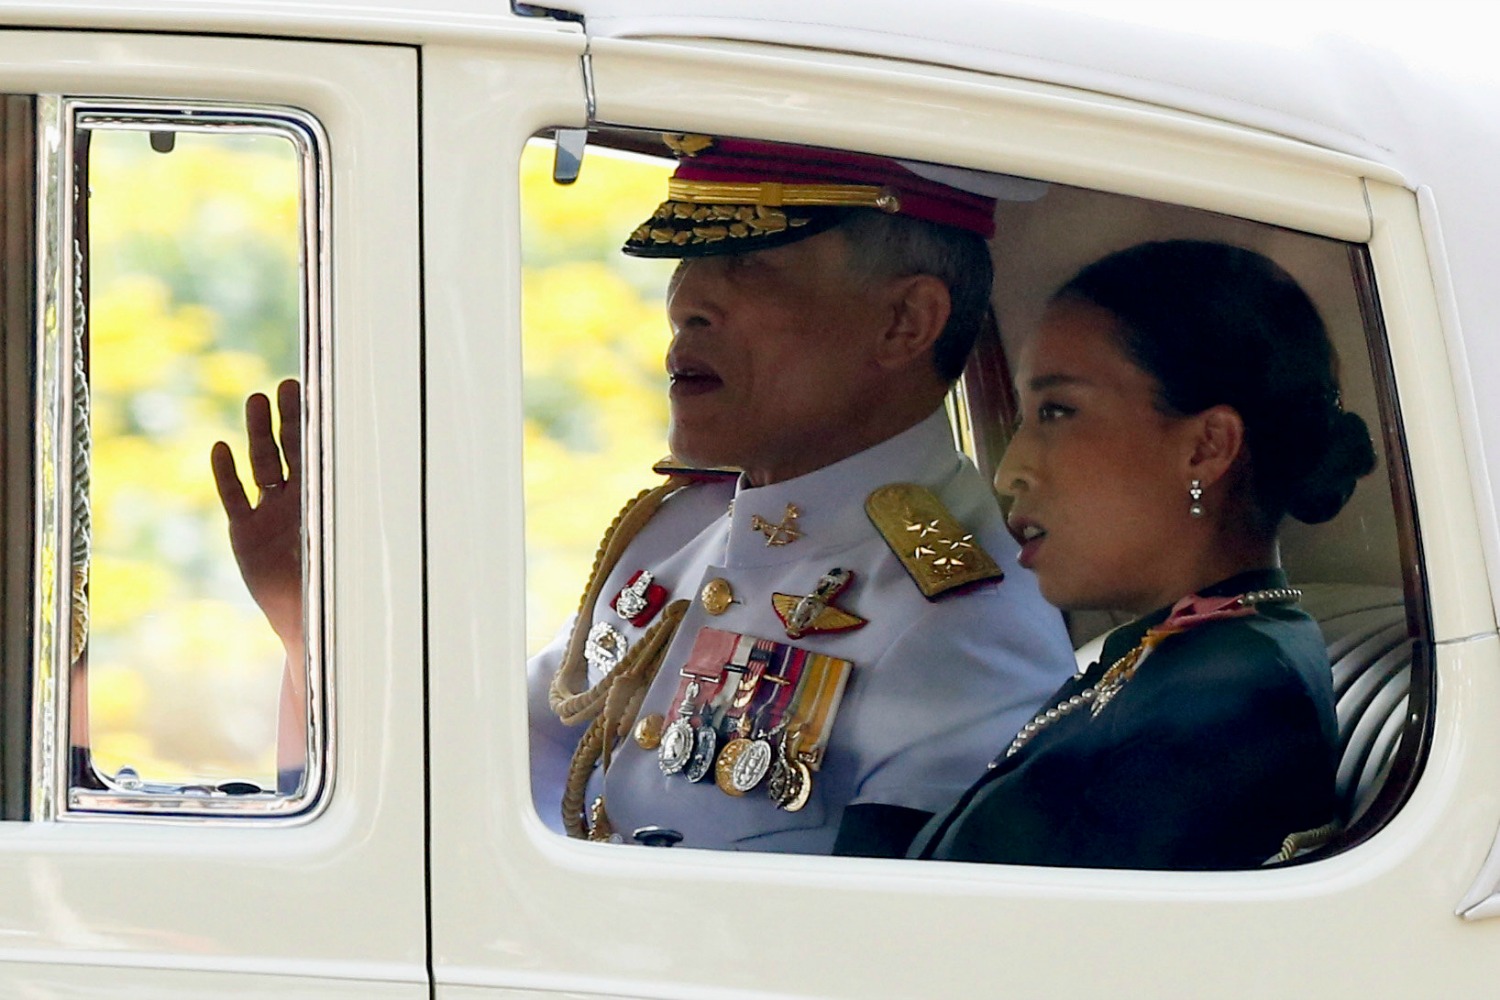 Primera aparición pública del controvertido nuevo rey de Tailandia